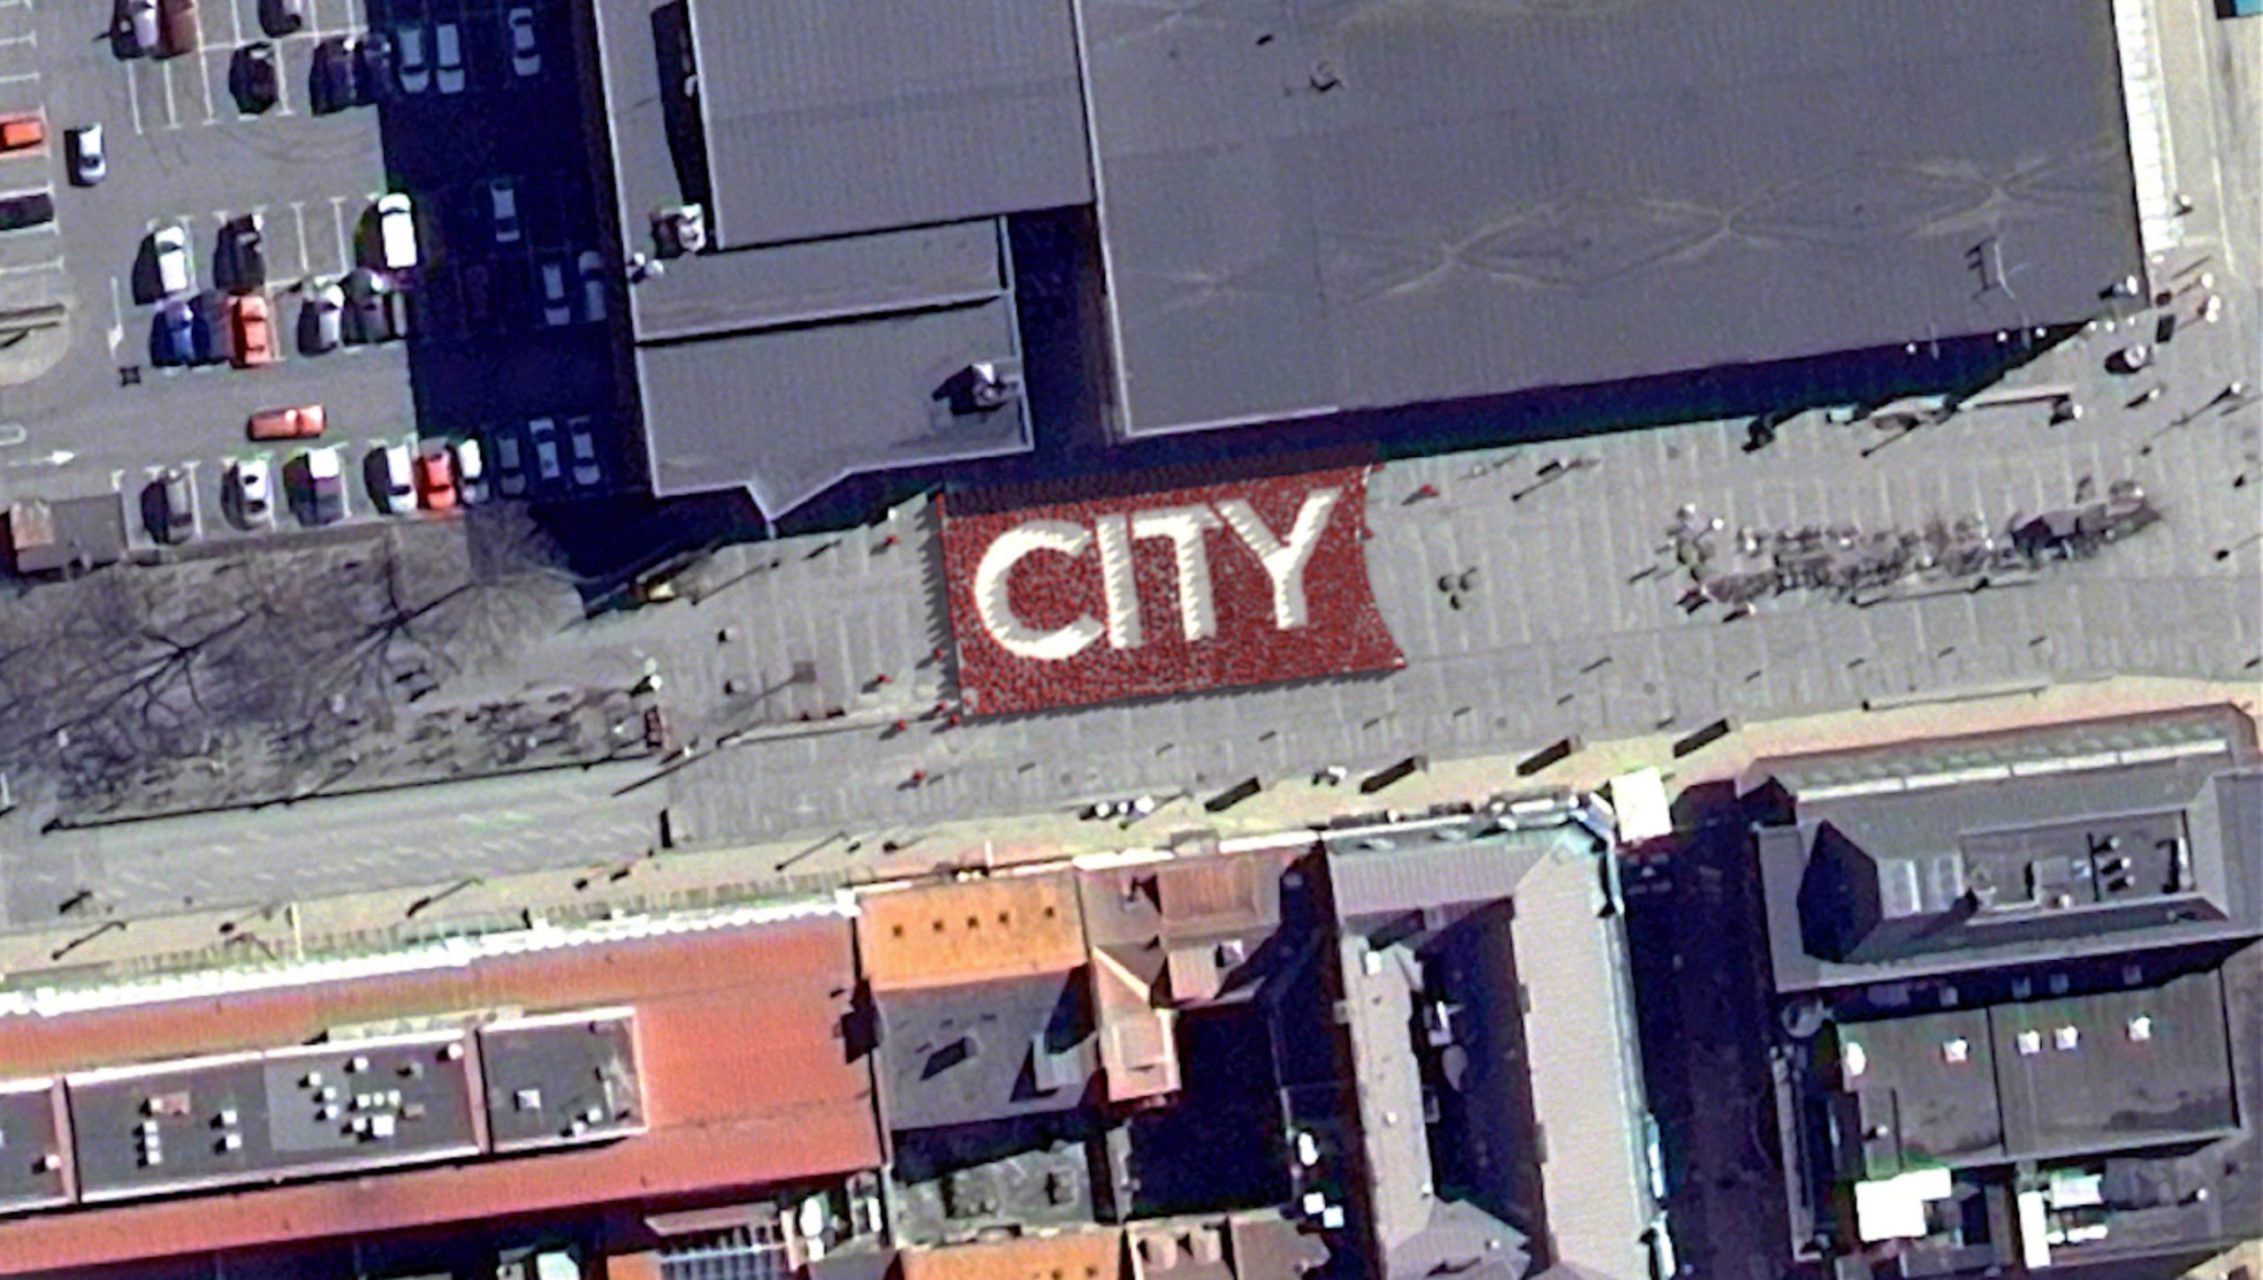 Foto taget från luften över byggnader för city